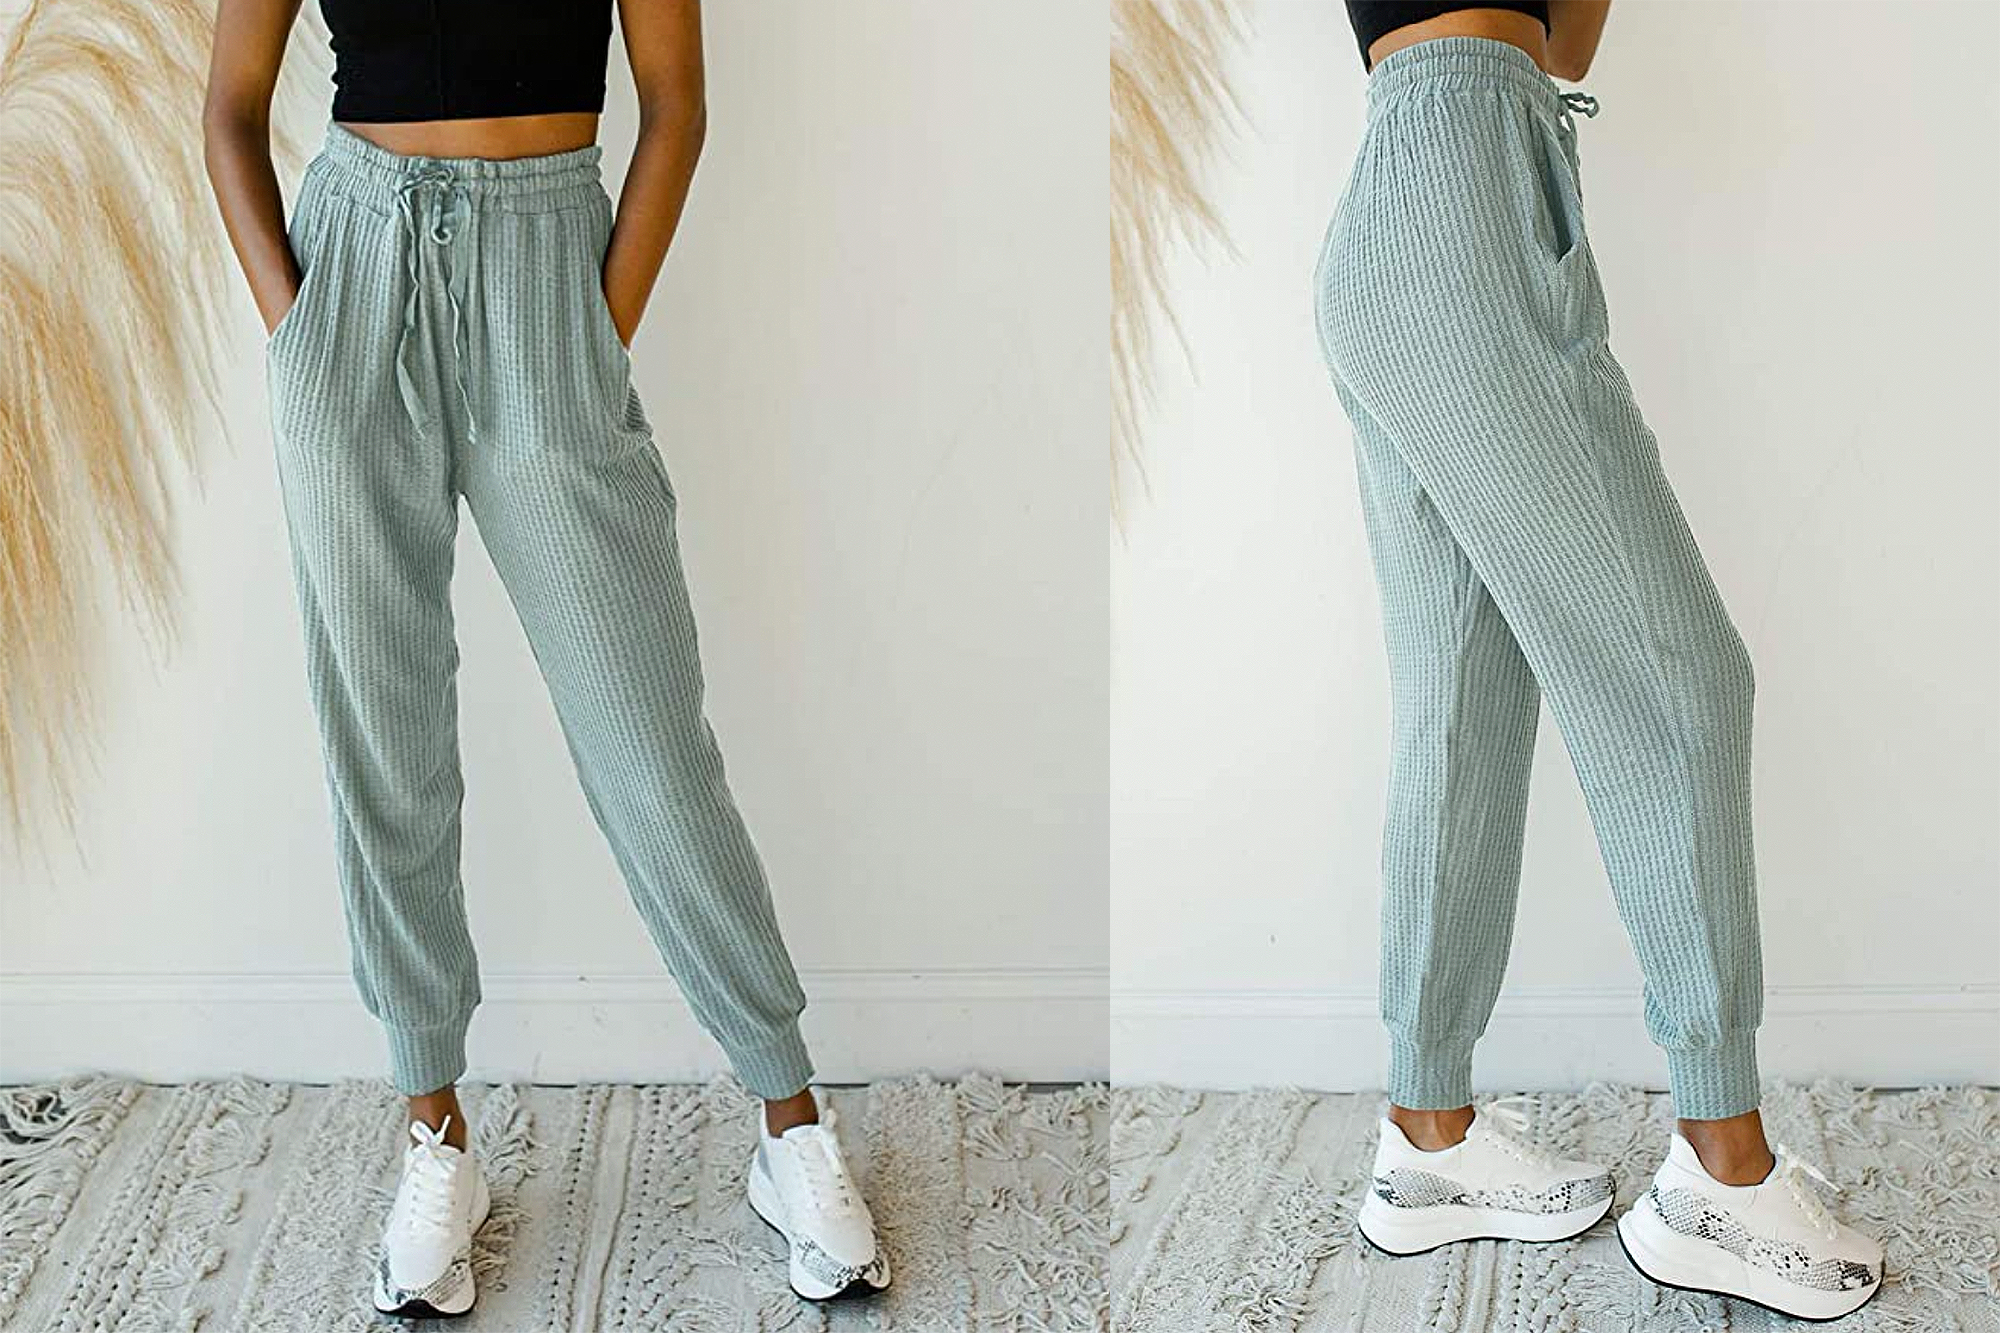 Realtree Sweatpants Adult Large Gray Drawstring Waffle Knit Pants